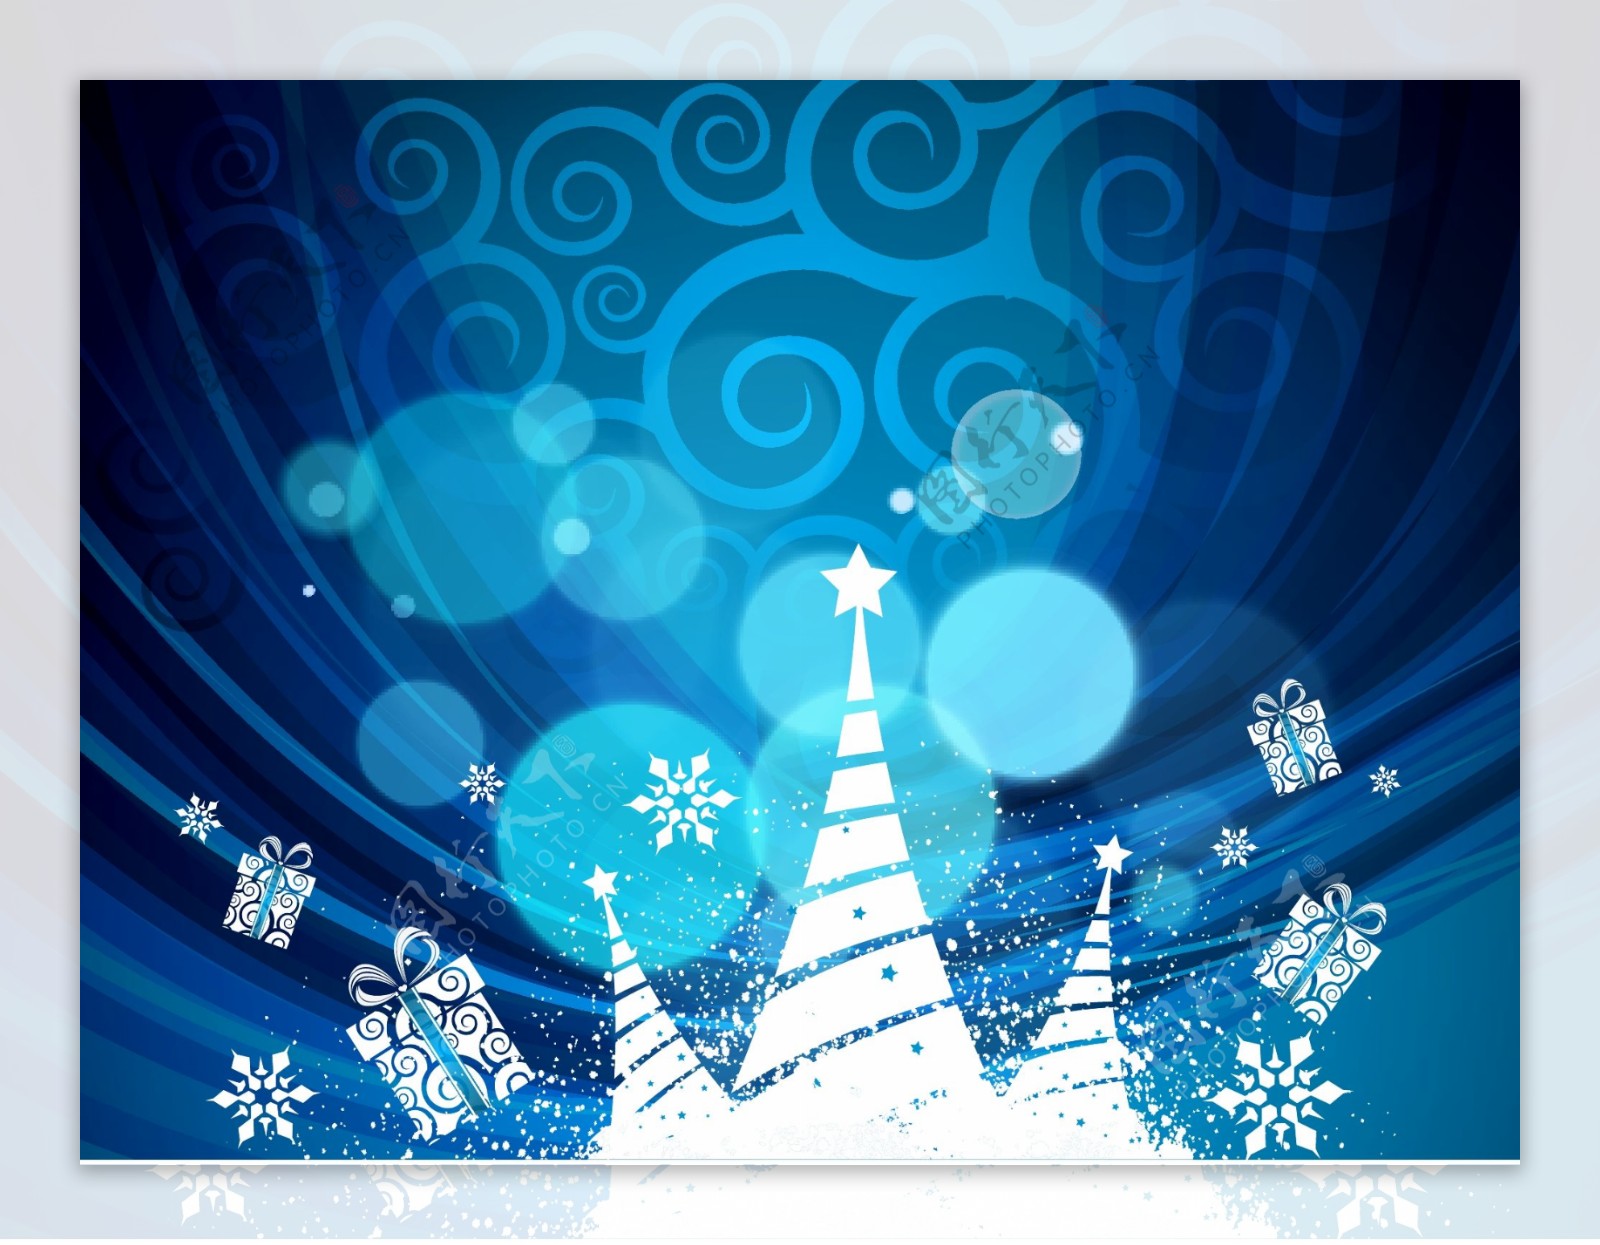 圣诞节梦幻蓝色背景矢量素材